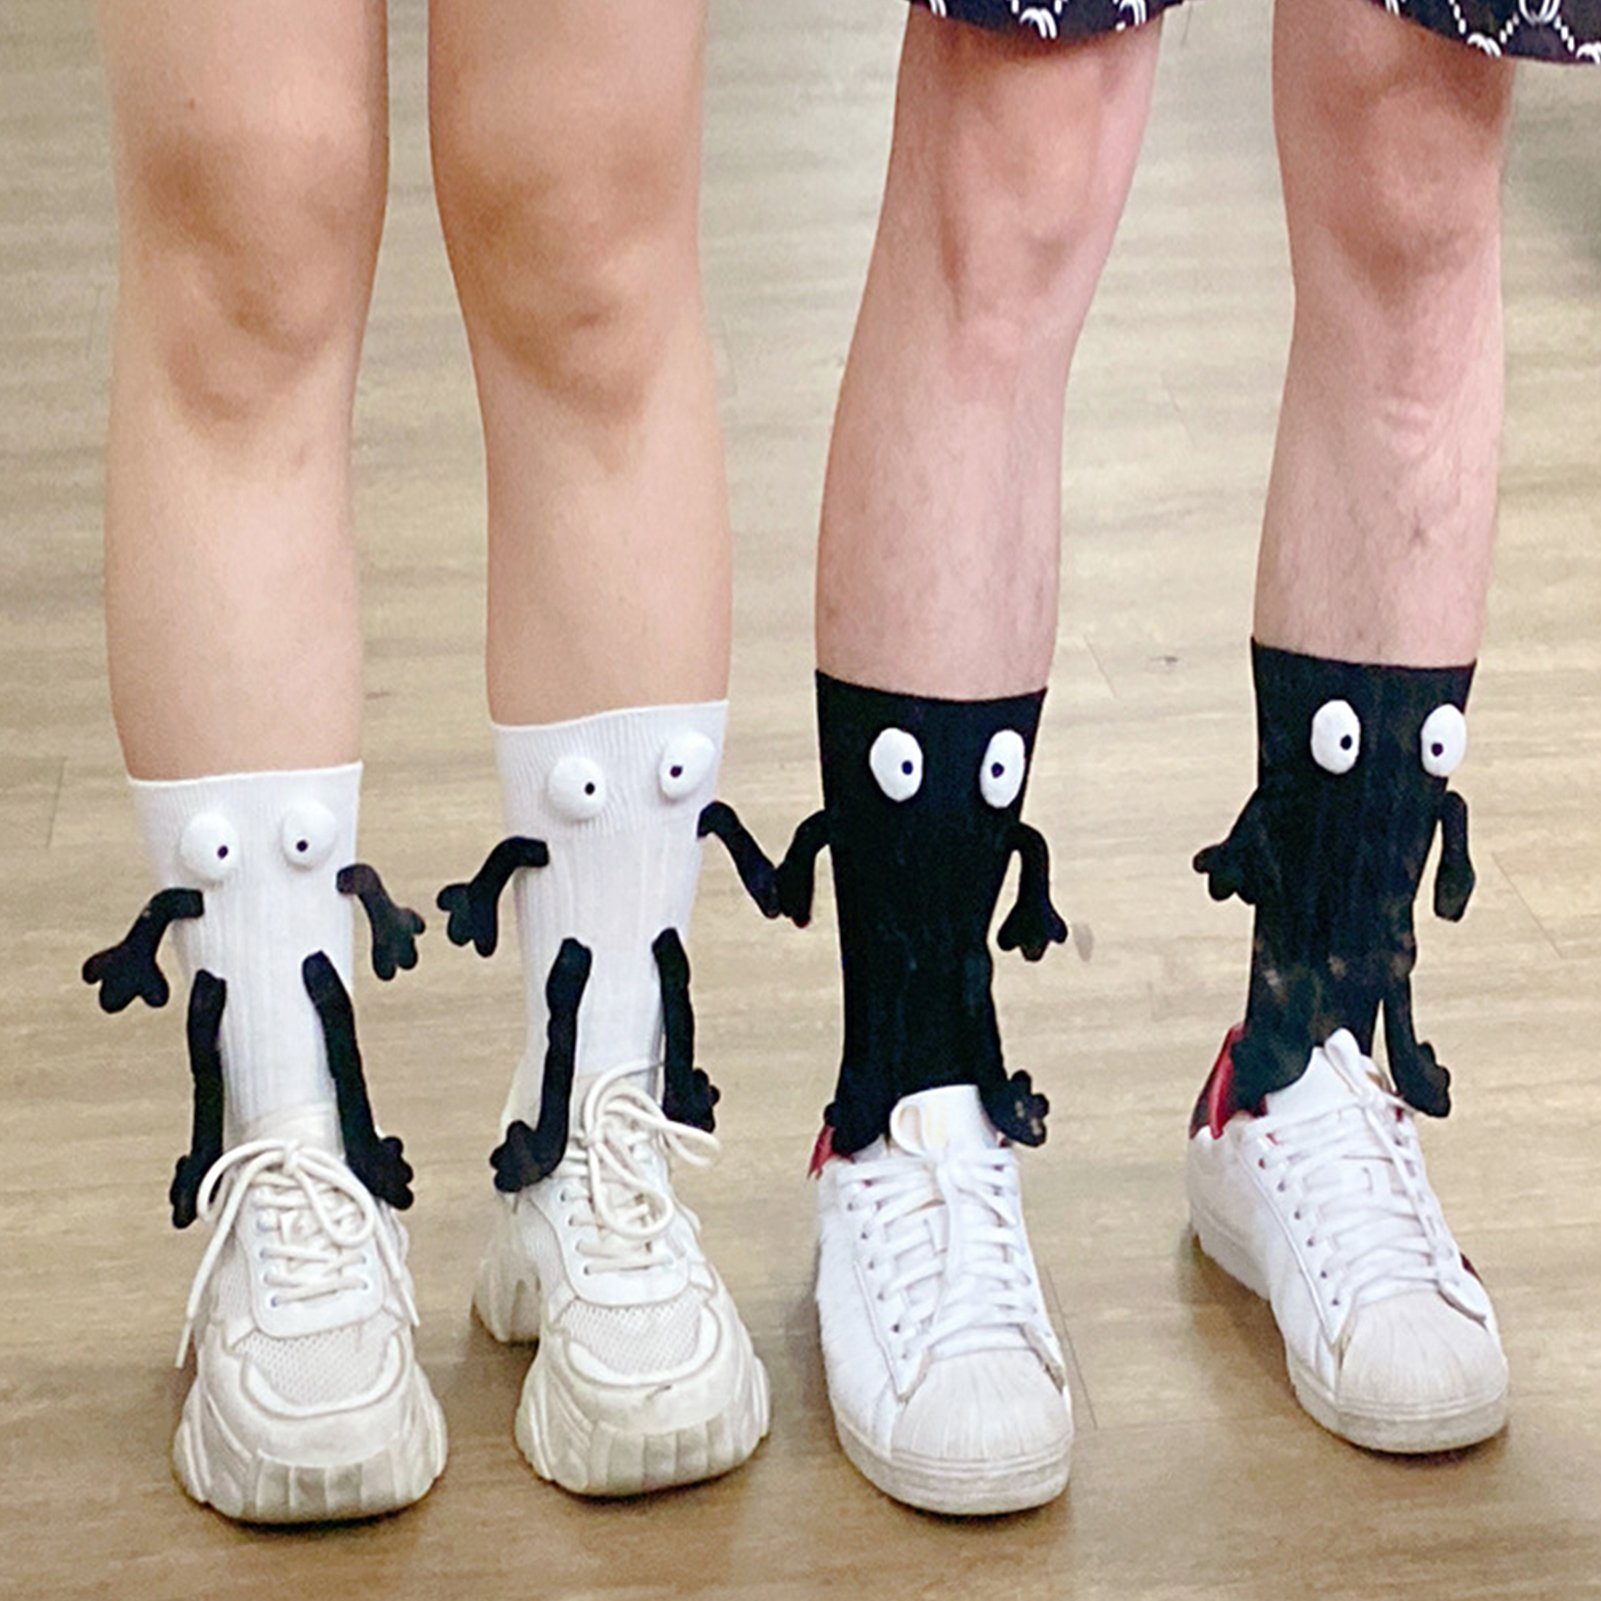 Rutaqian Socken Socken, lustige Socken für Männer und Frauen für Paare